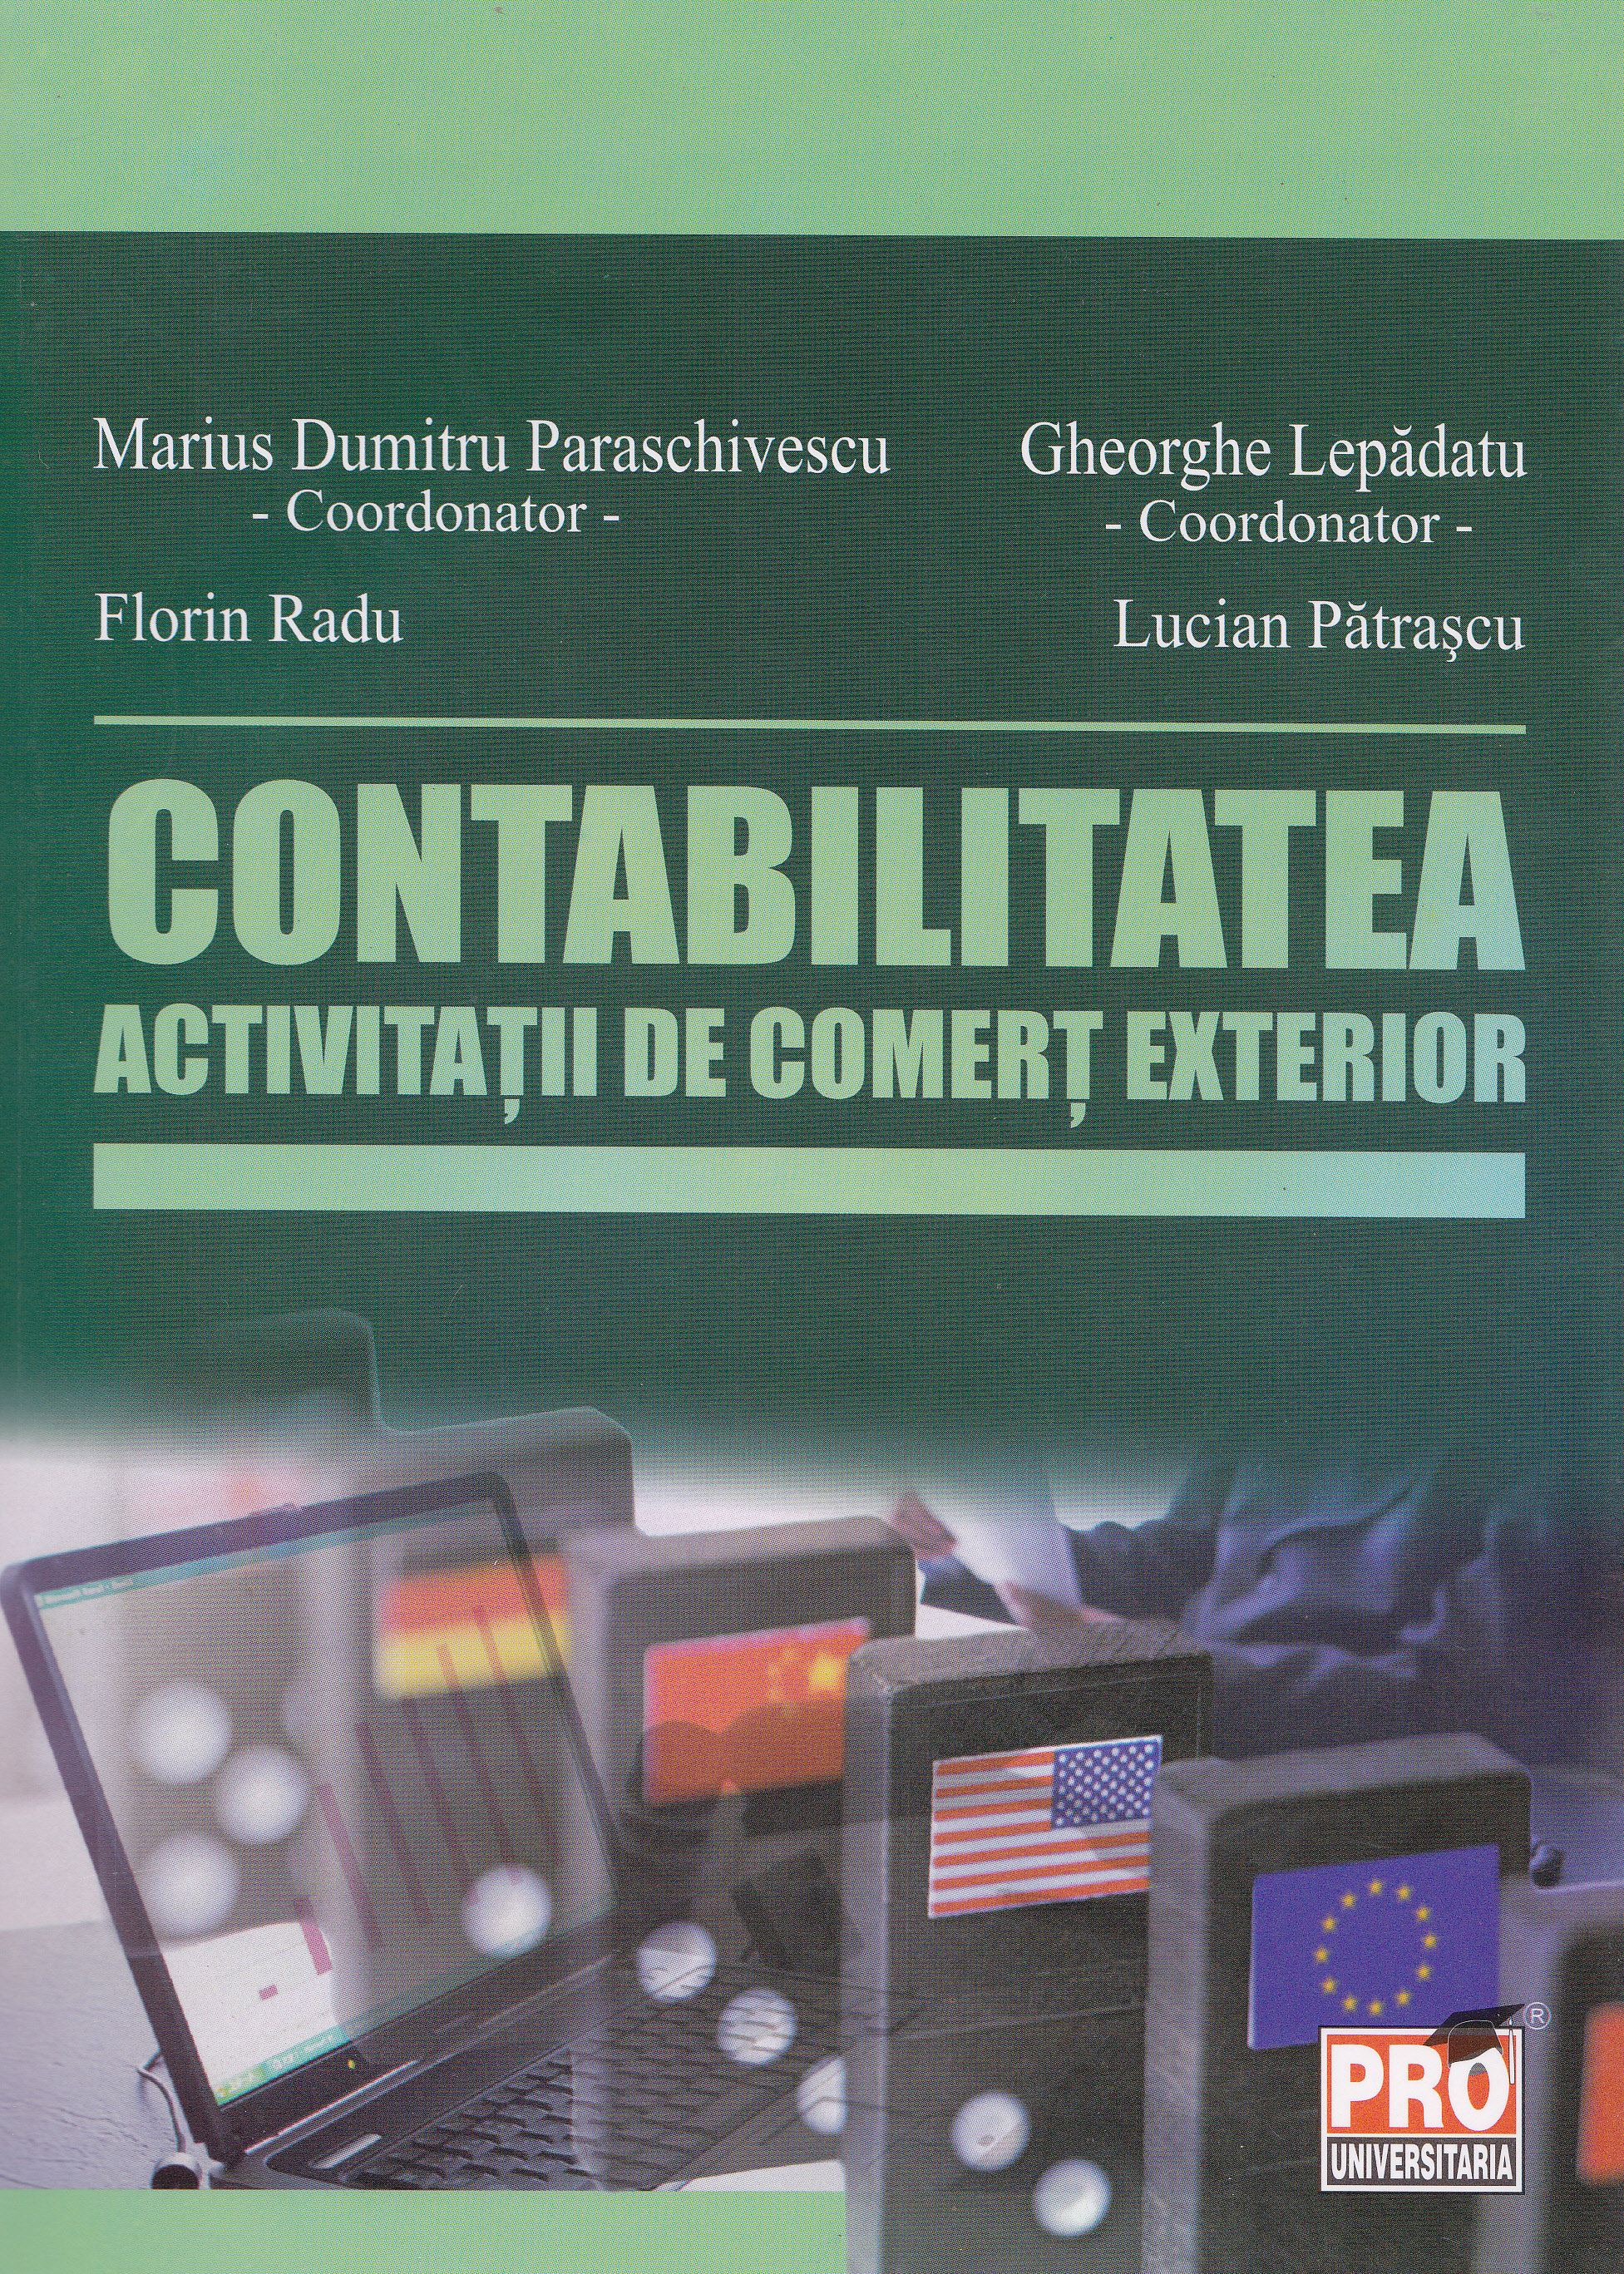 Contabilitatea activitatii de comert exterior - Marius Dumitru Paraschivescu, Lucian Patrascu